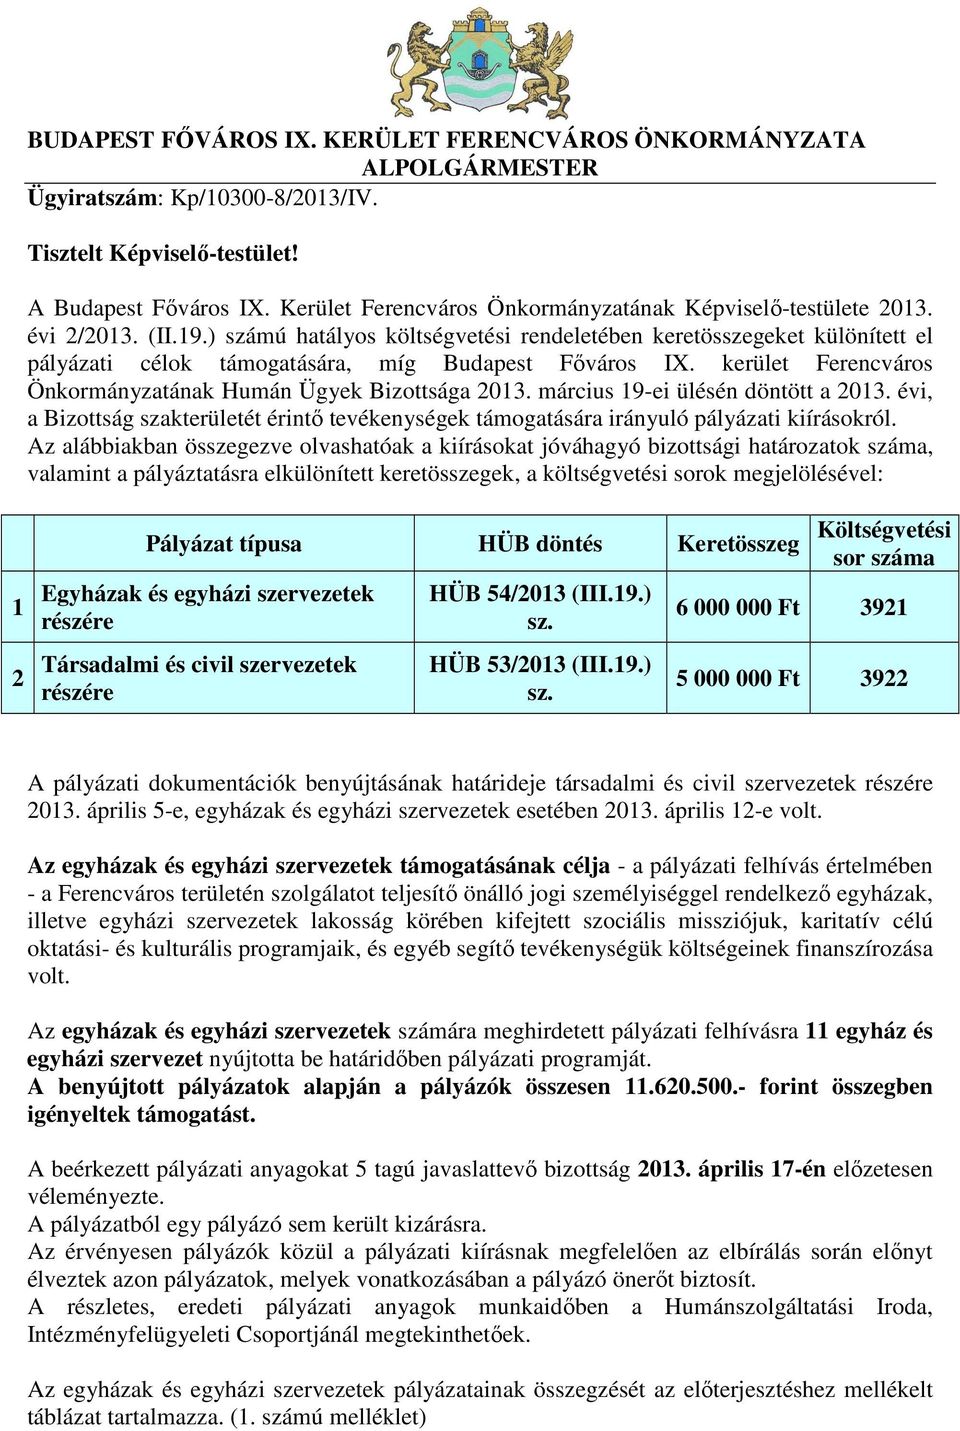 ) számú hatályos költségvetési rendeletében keretösszegeket különített el pályázati célok ára, míg Budapest Főváros IX. kerület Ferencváros Önkormányzatának Humán Ügyek Bizottsága 2013.